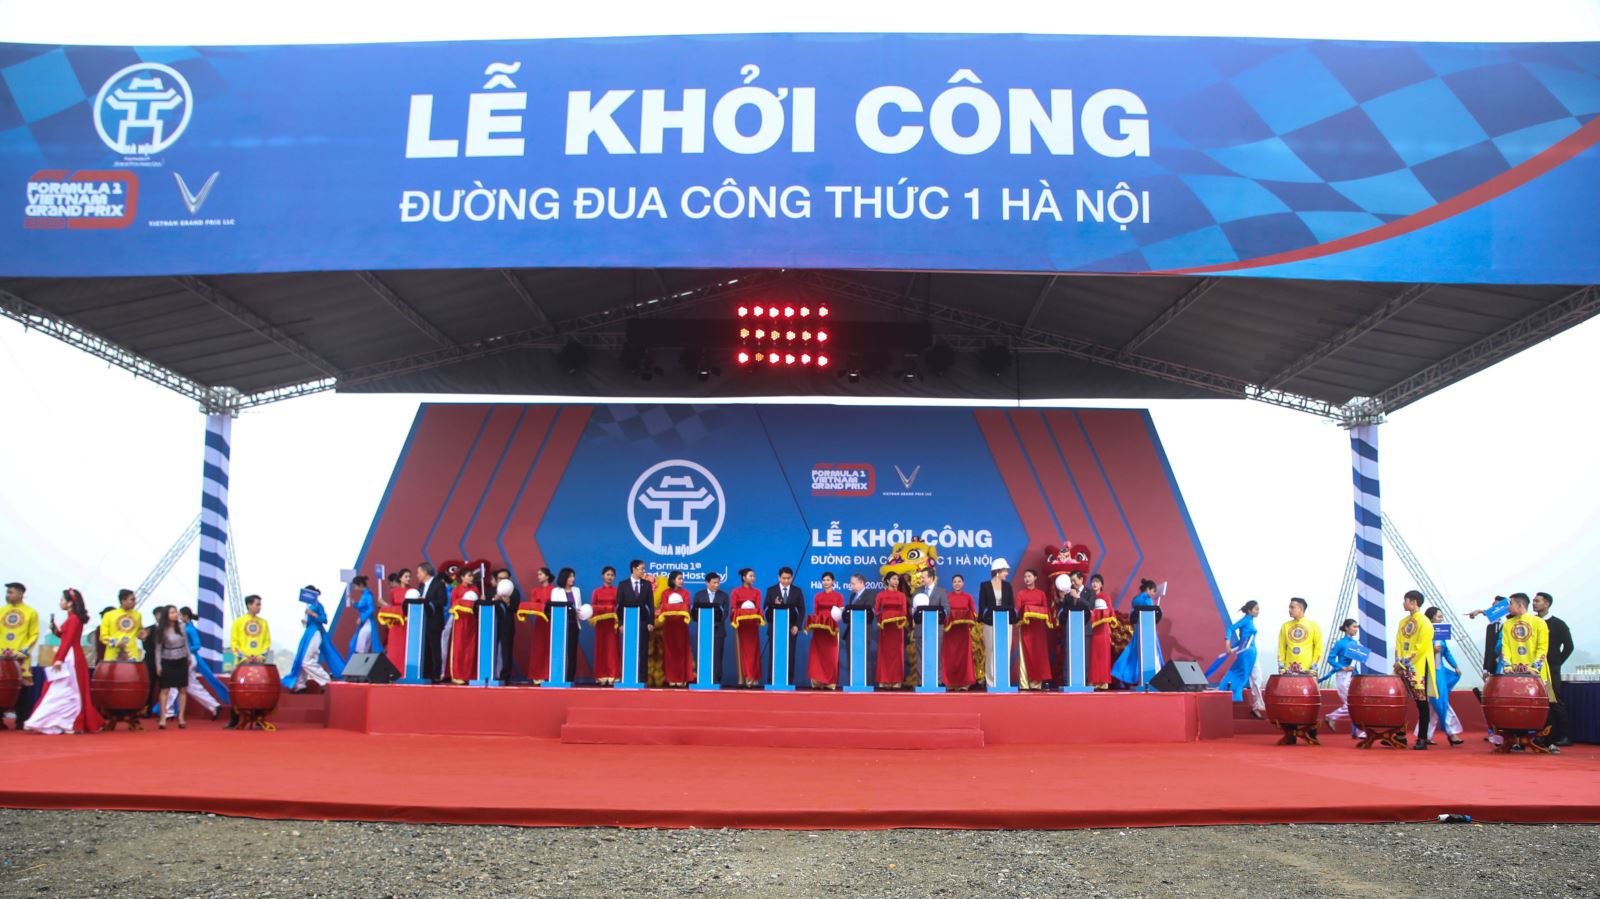 Vingroup cam kết hoàn tất đường đua F1 Hà Nội đúng hạn